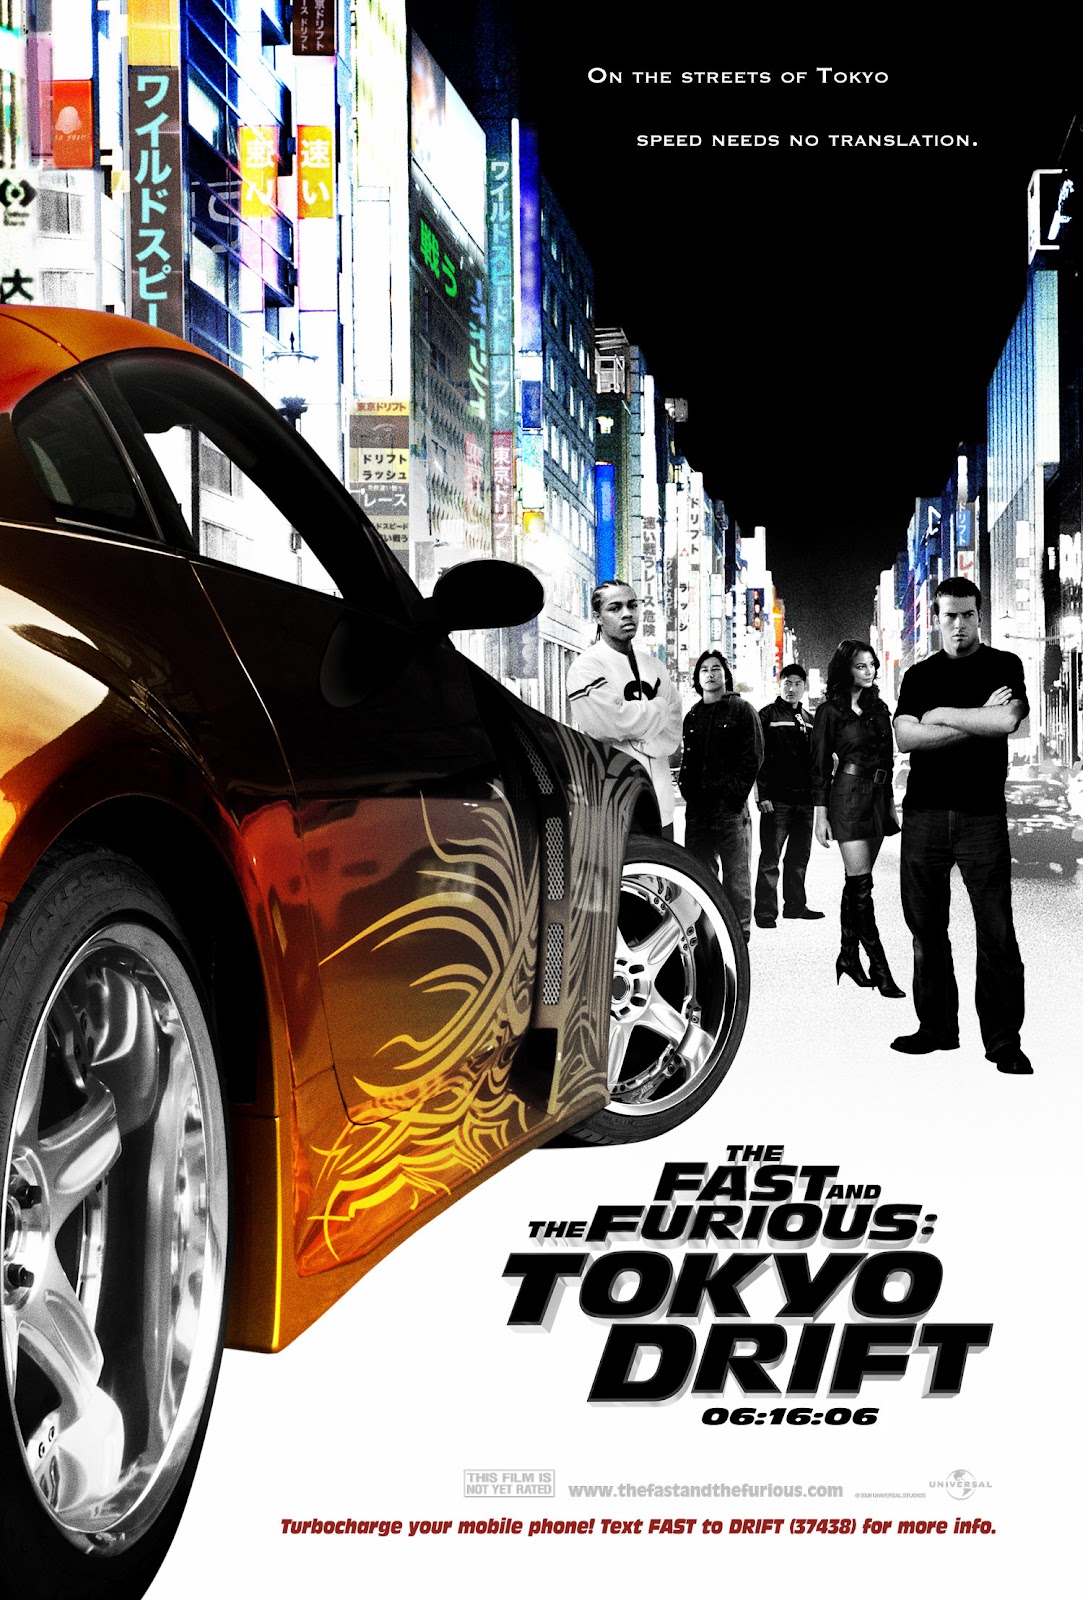 ดูหนังออนไลน์ฟรี The Fast and the Furious: Tokyo Drift เร็ว แรงทะลุนรก ซิ่งแหกพิกัดโตเกียว